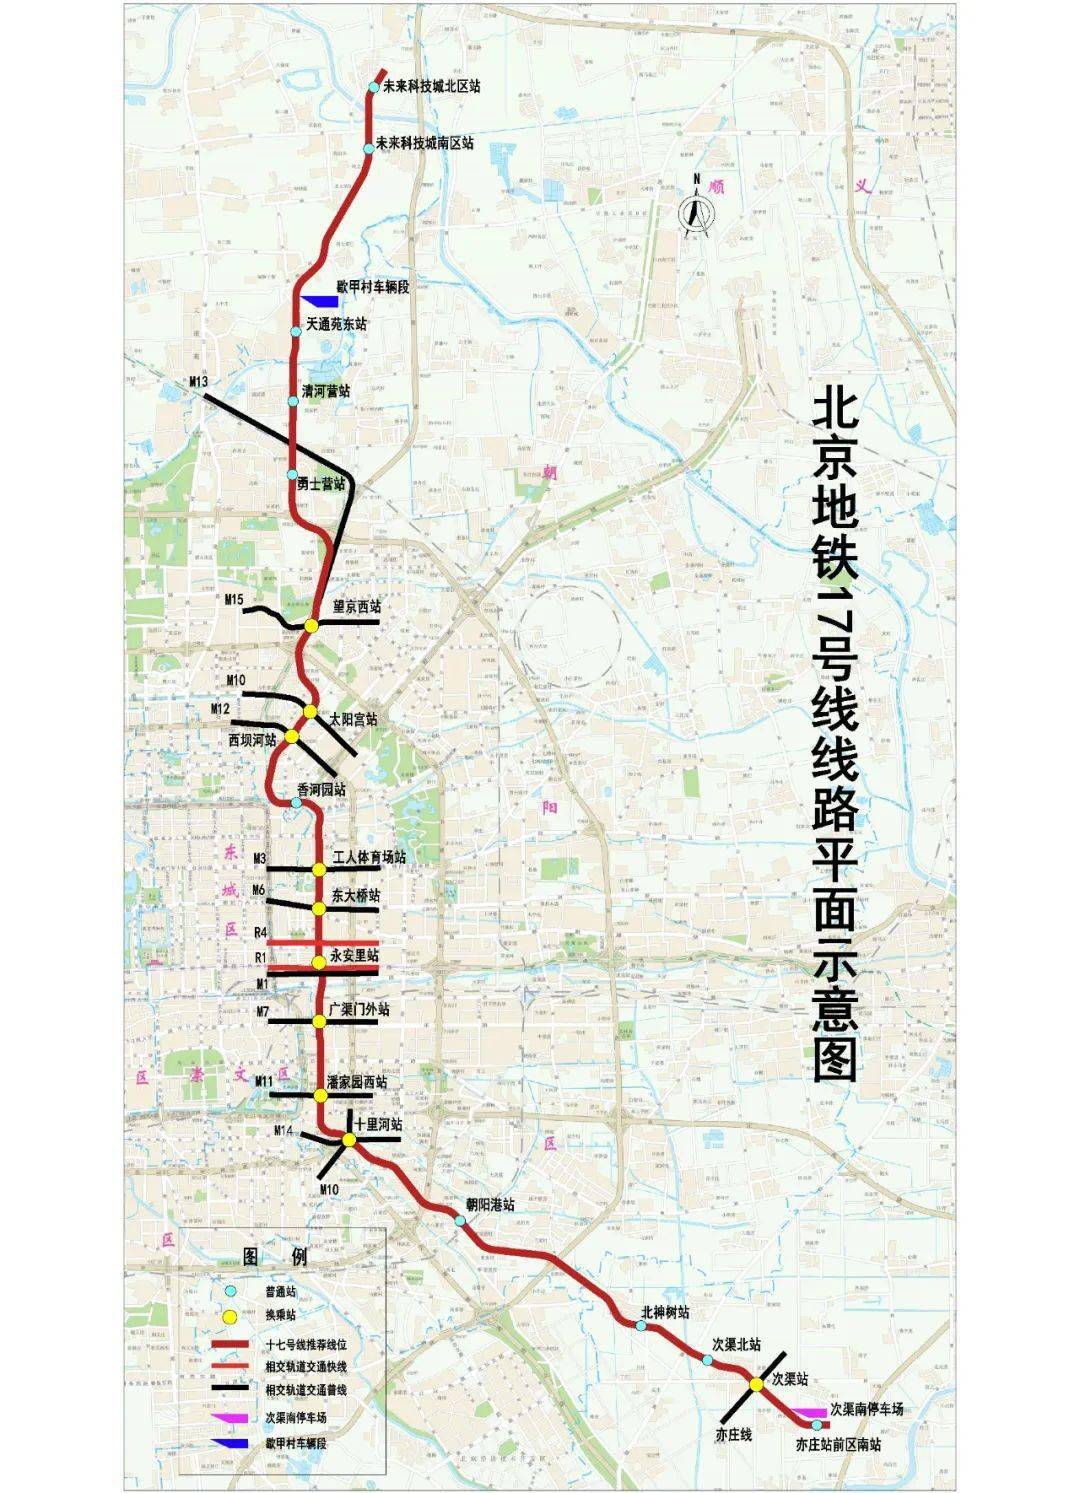 地铁17号线线路图/市轨道公司提供